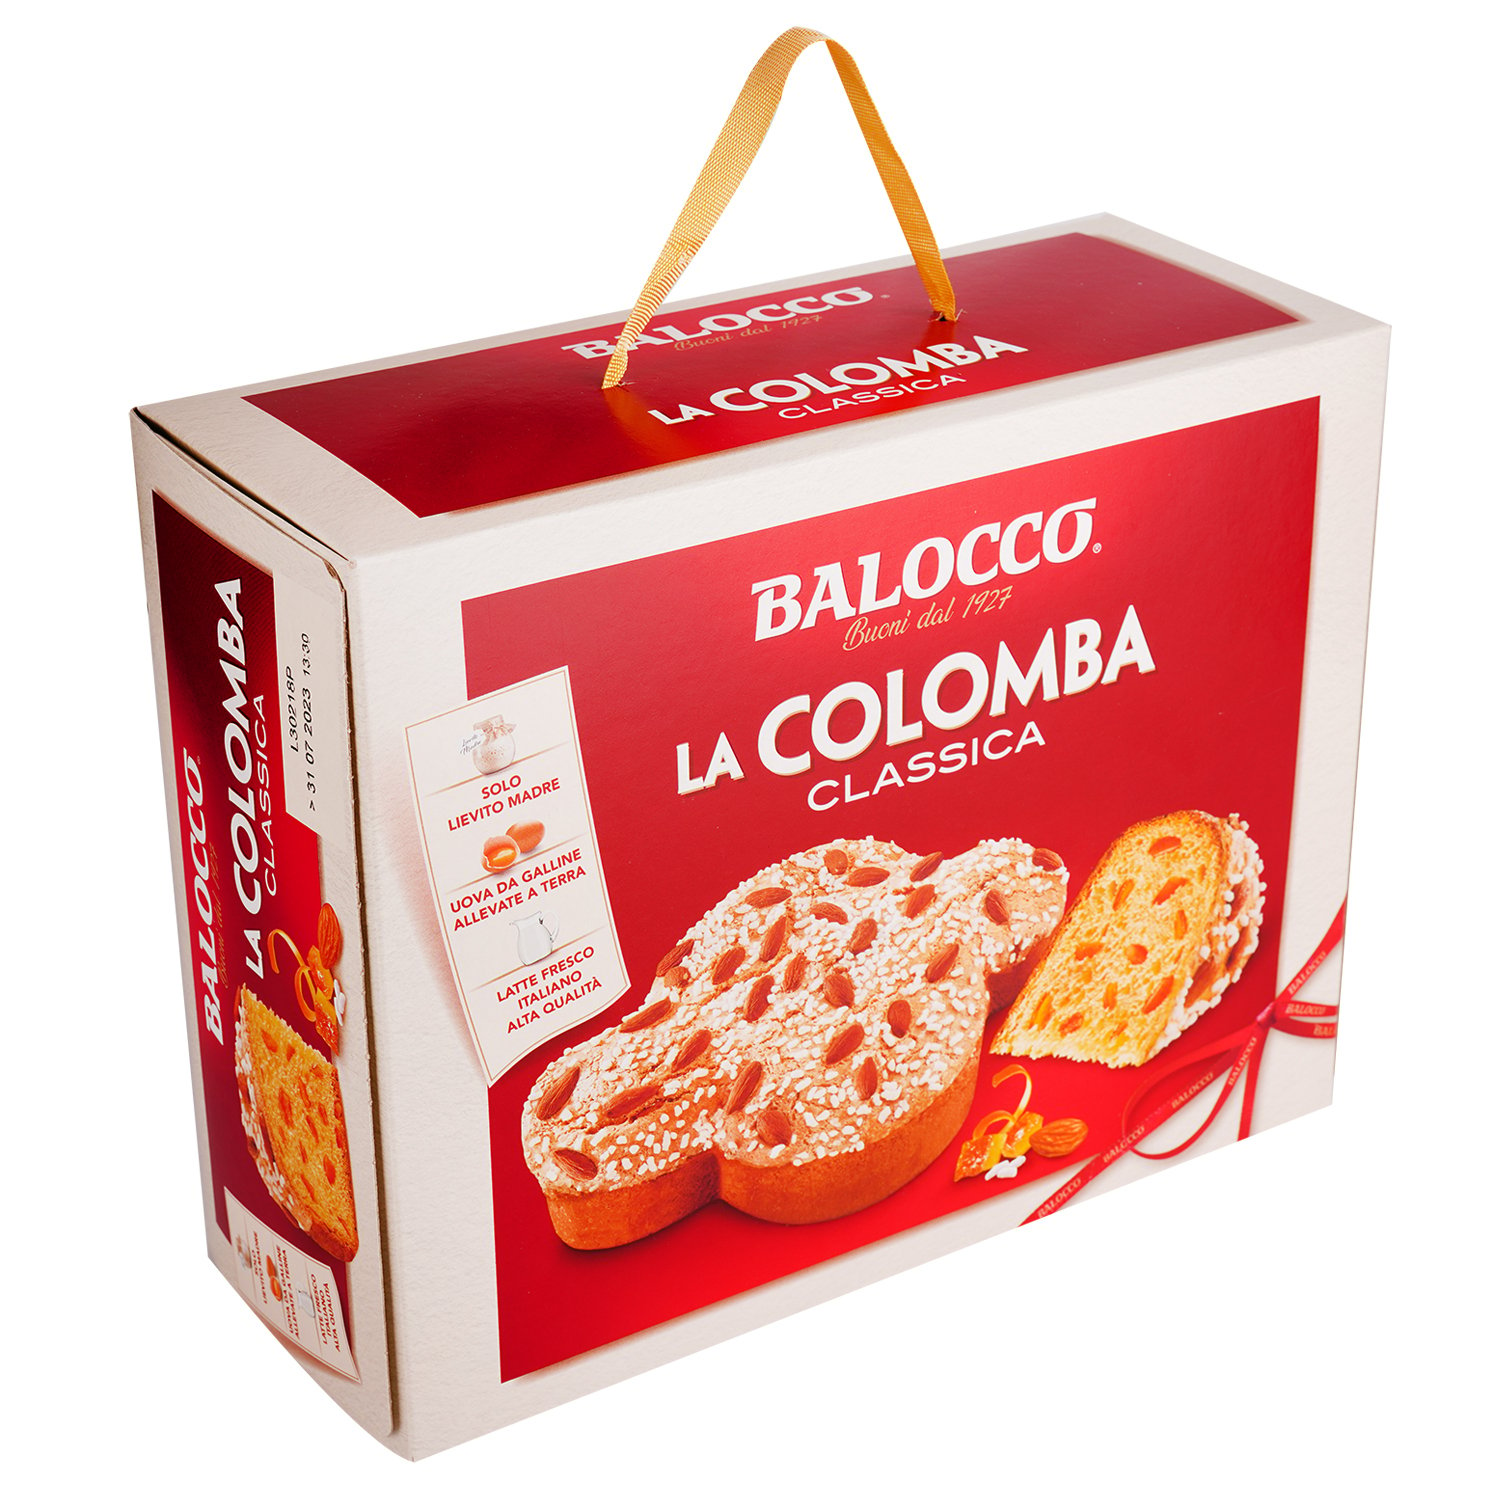 Коломба Balocco La Colombа Classica 500 г (852435) - фото 1